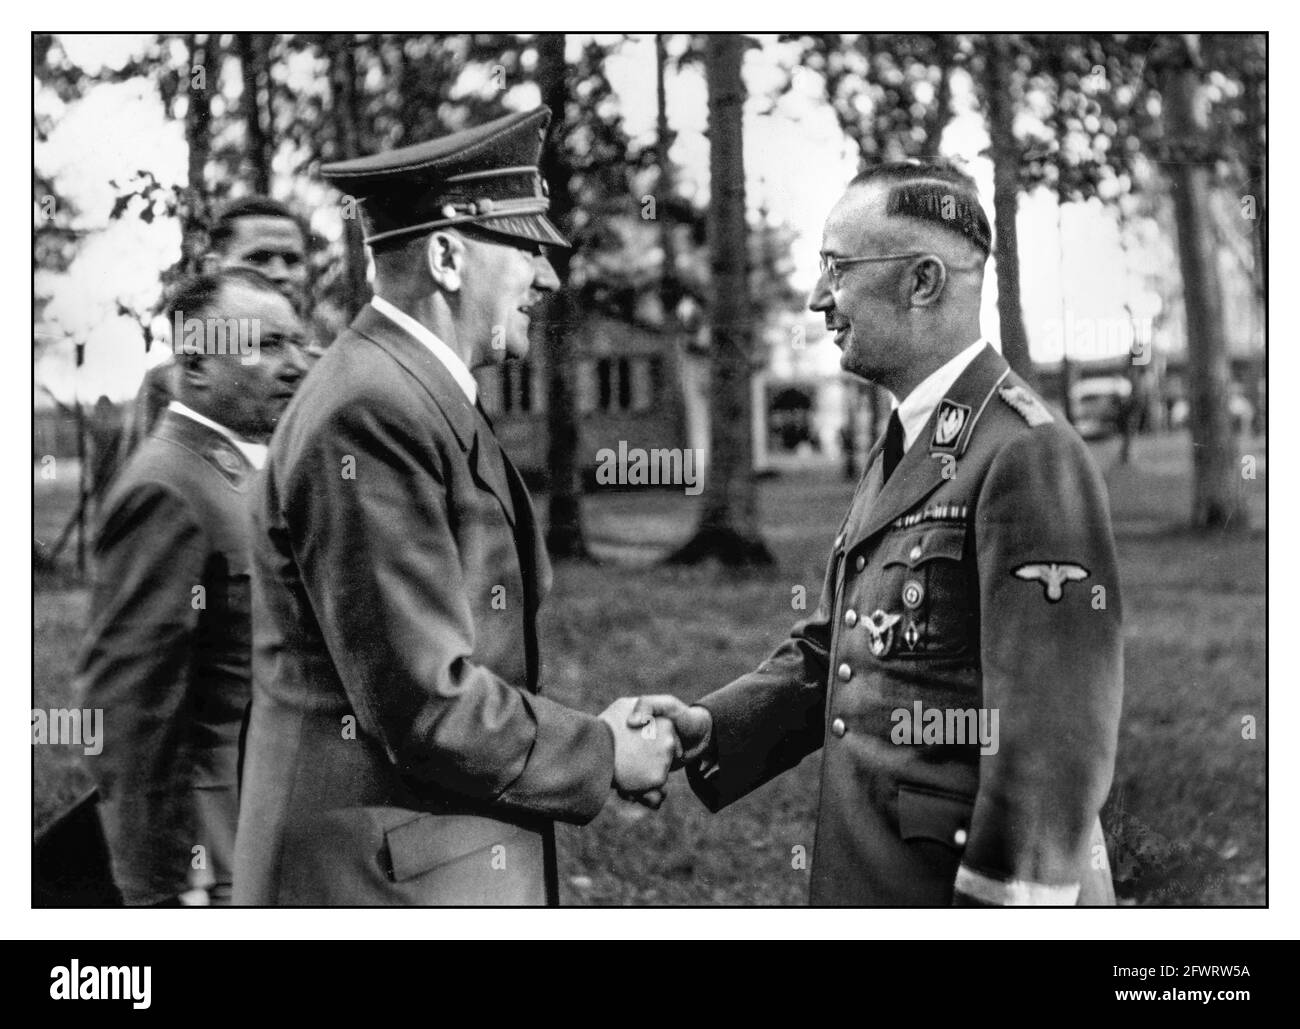 Adolf Hitler della seconda Guerra Mondiale saluta Heinrich Himmler e gli augura un buon compleanno, 1943. Adolf Hitler con il leader delle SS naziste Heinrich Himmler nell'ottobre 1943 presso la sede di Wolfs Lair 'Wolfsschanze' vicino a Rastenburg nella Prussia orientale. Foto Stock